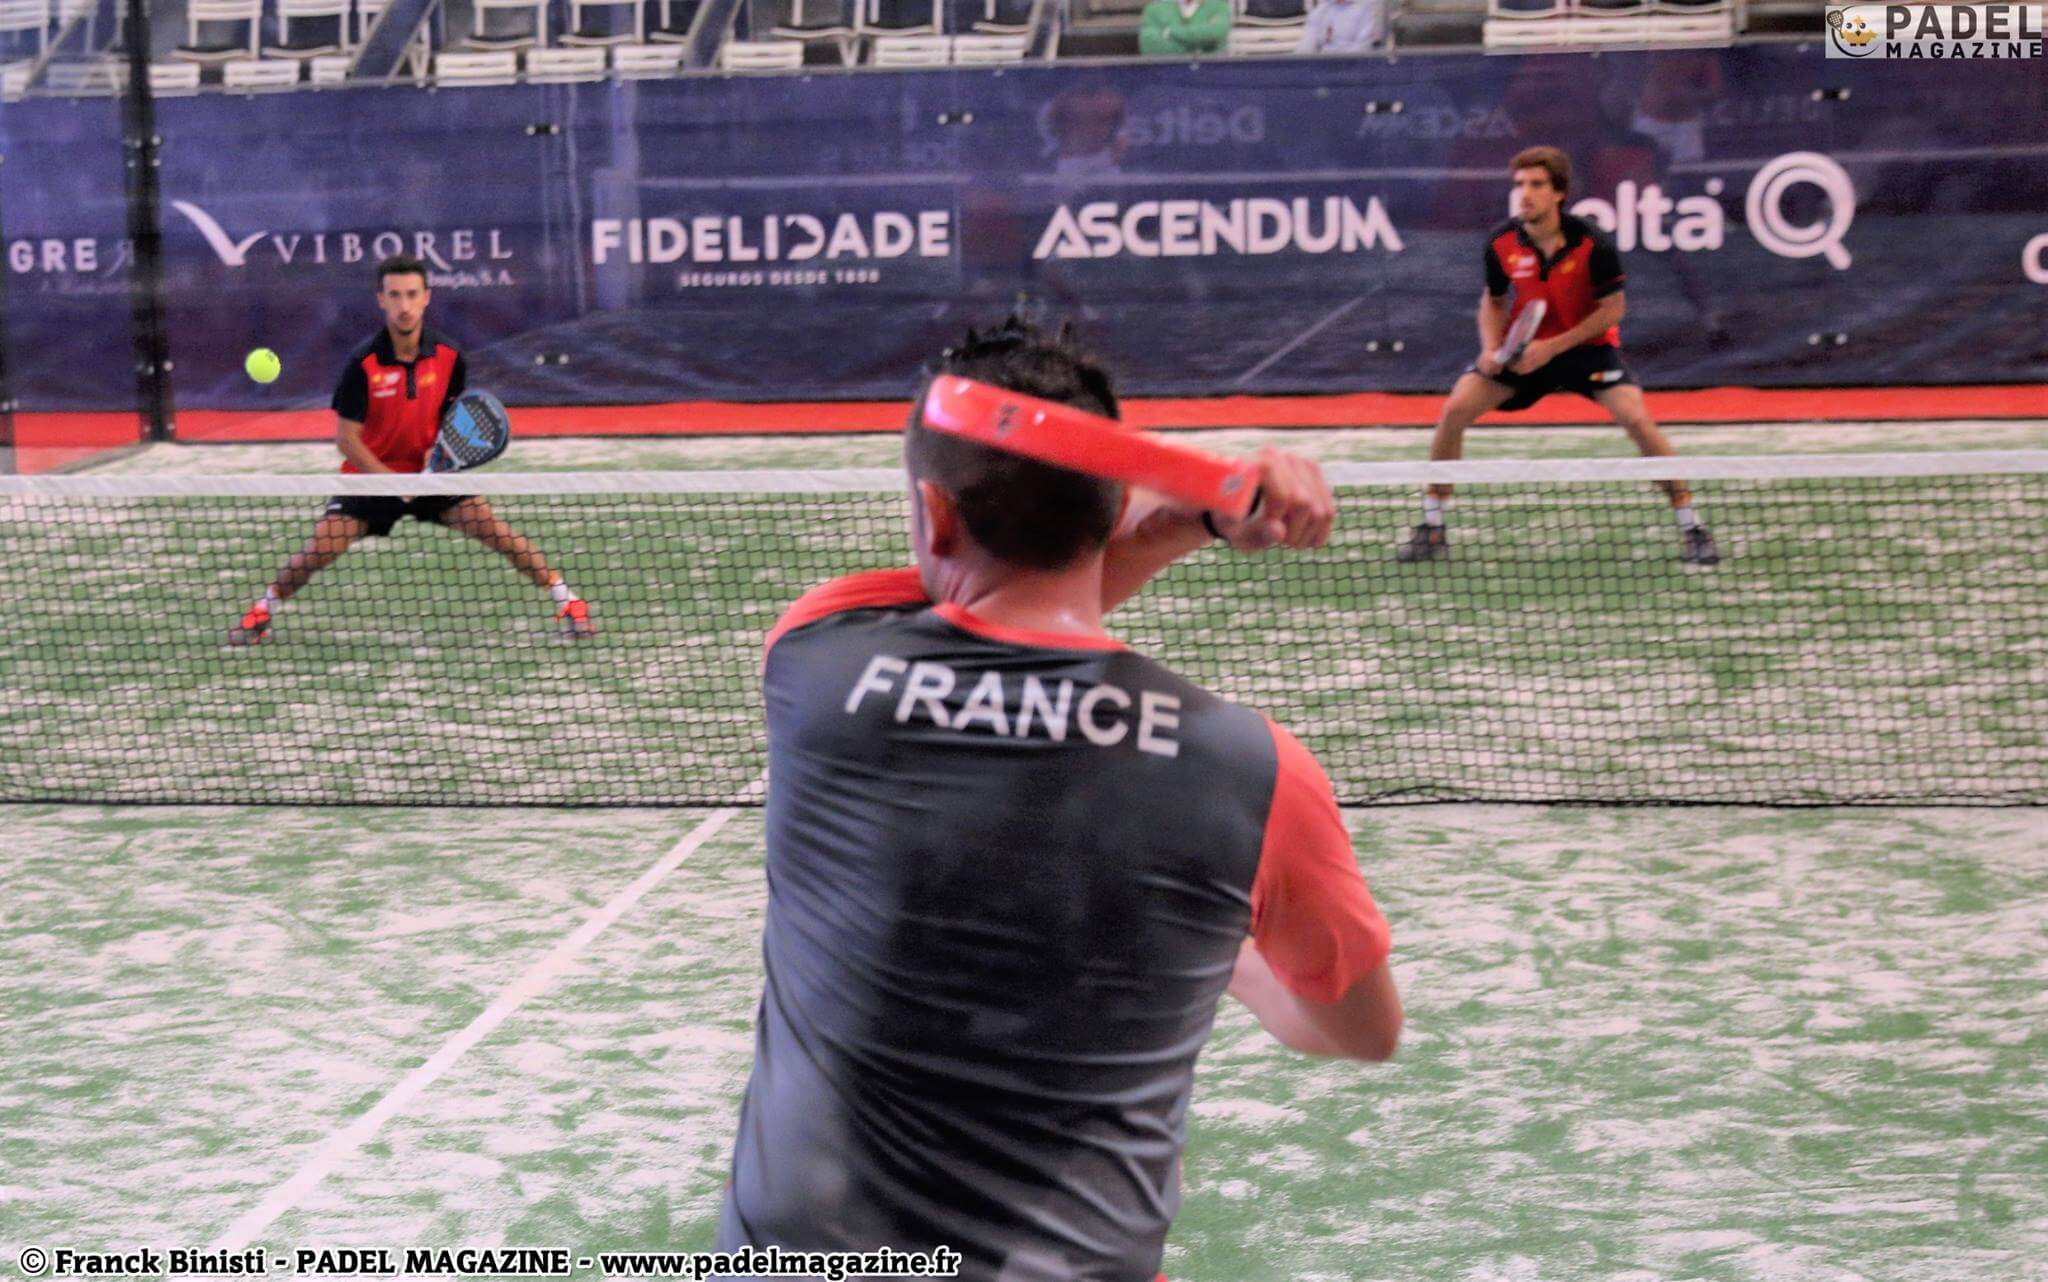 França abre a bola para o campeonato mundial padel pela equipe 2016